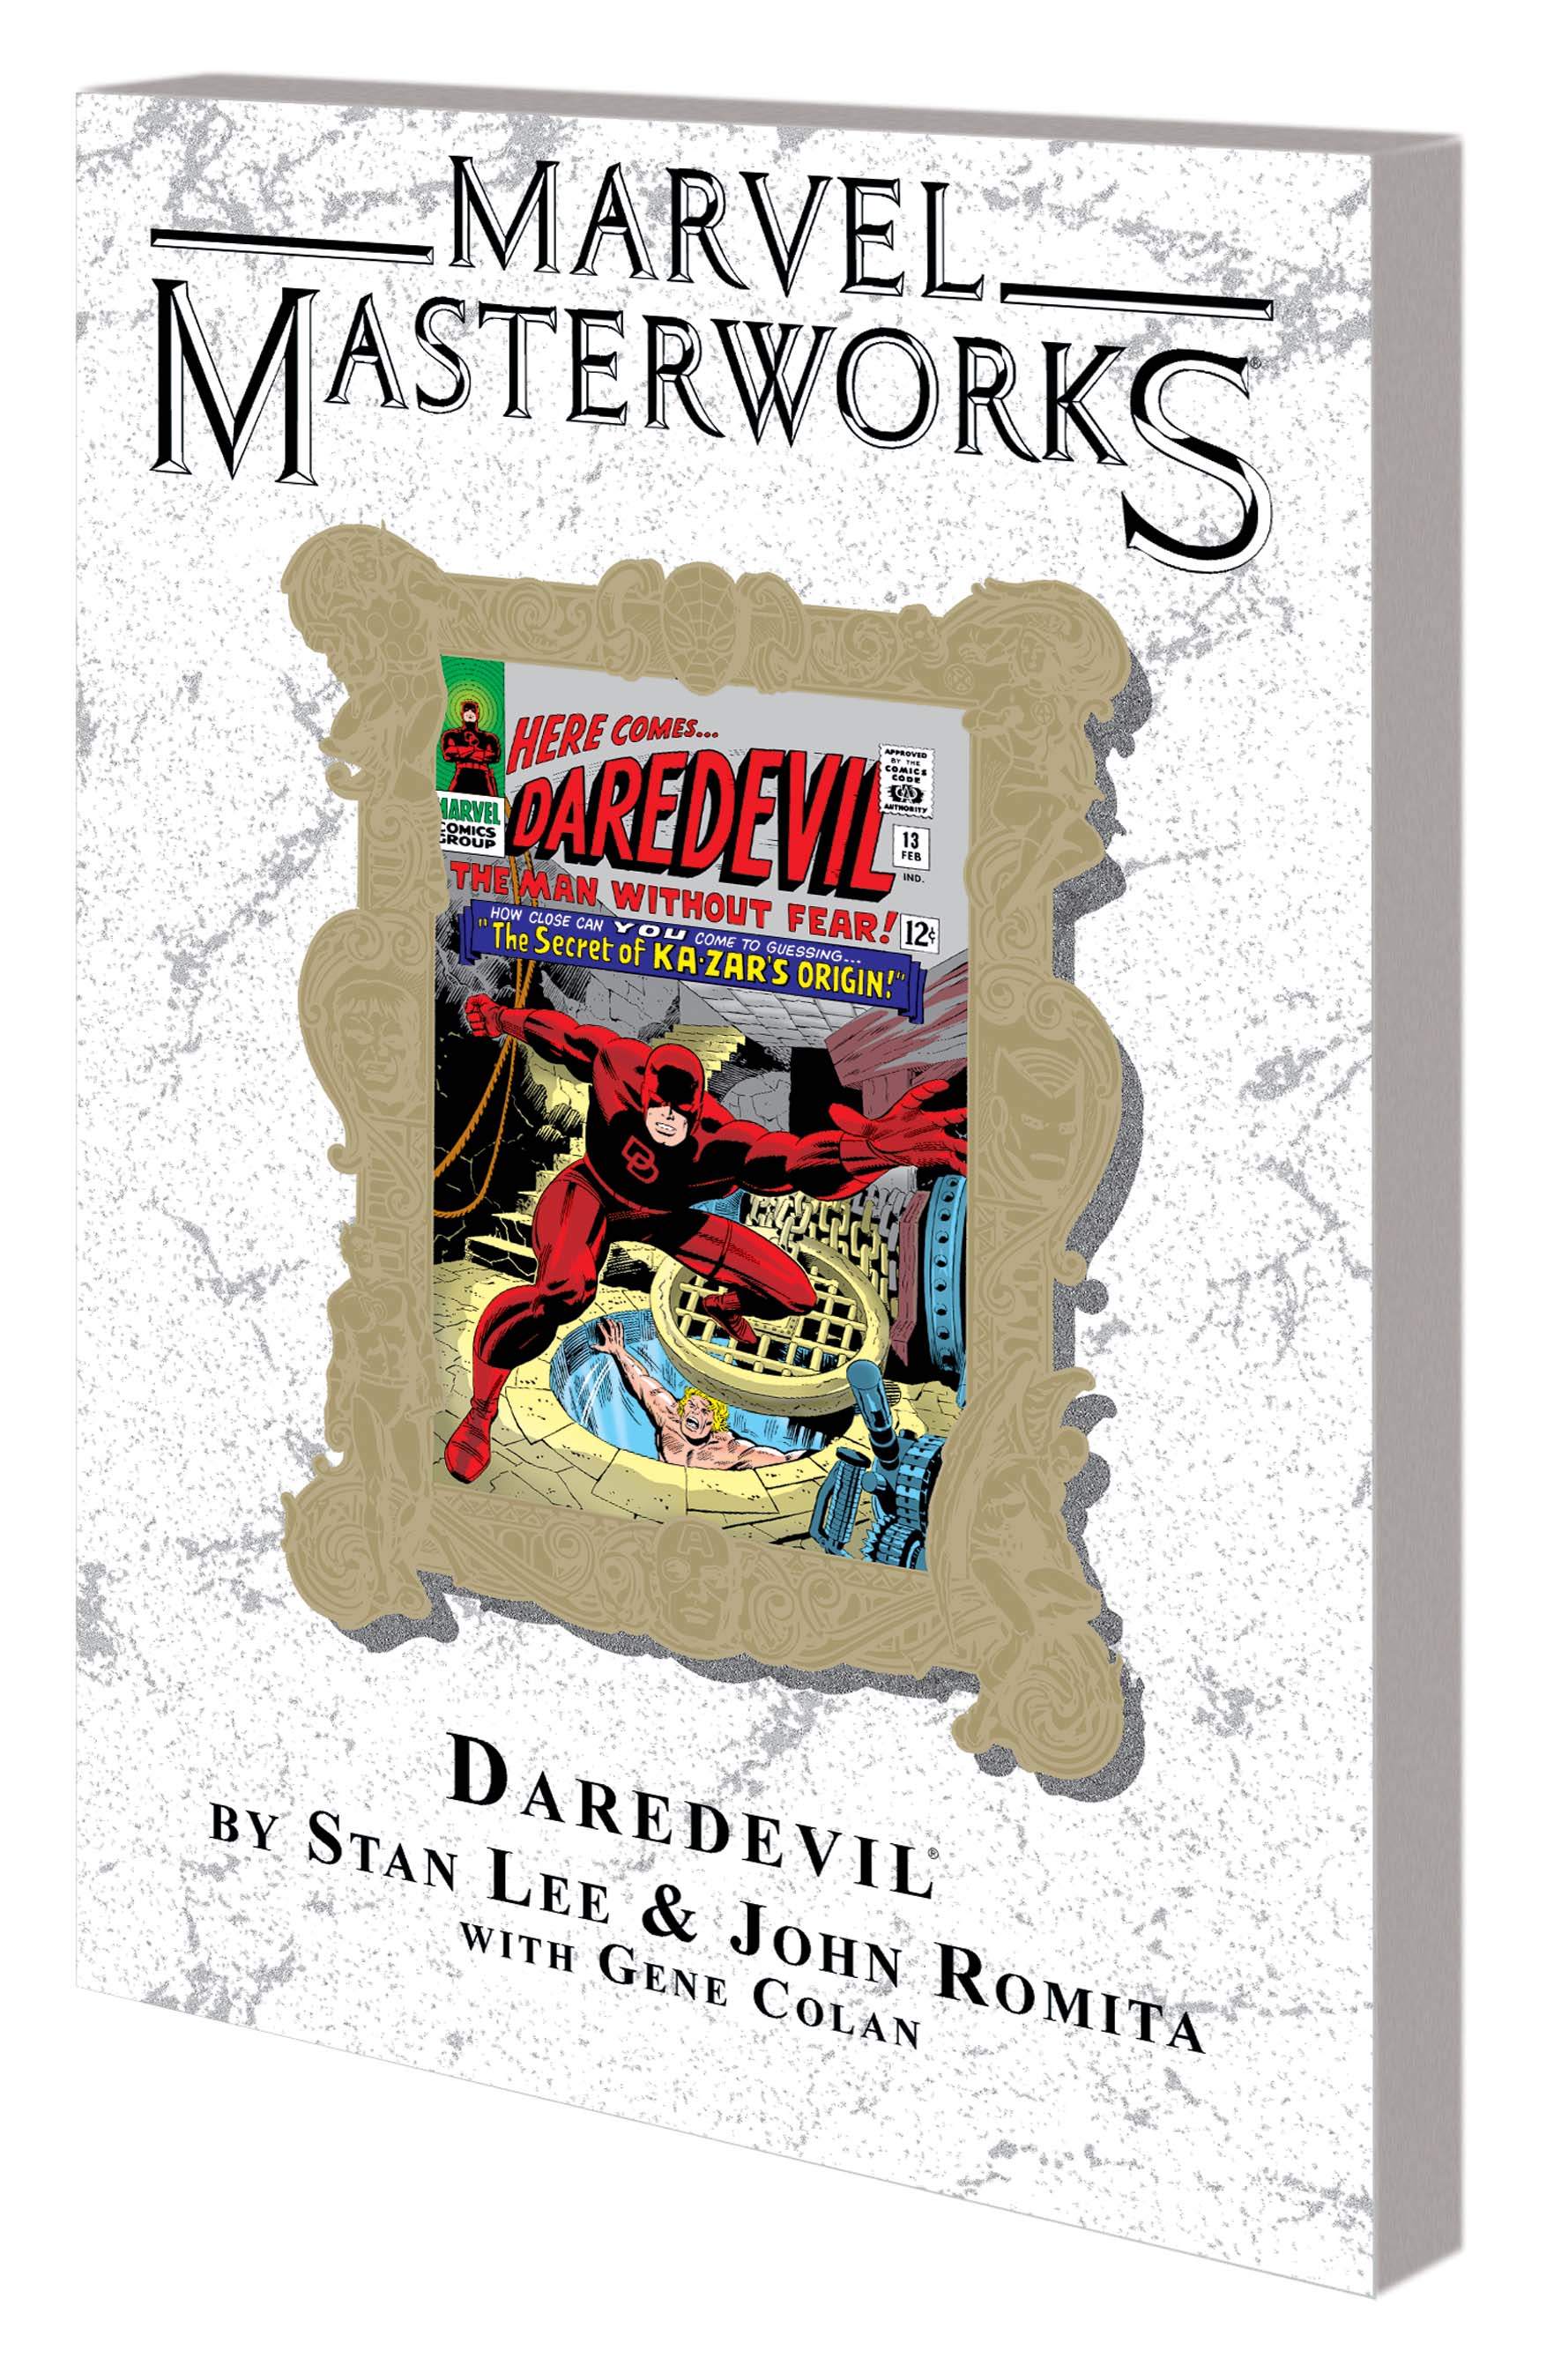 Marvel Masterworks: Daredevil Vol. 2 Variant (DM Only) (Trade Paperback)